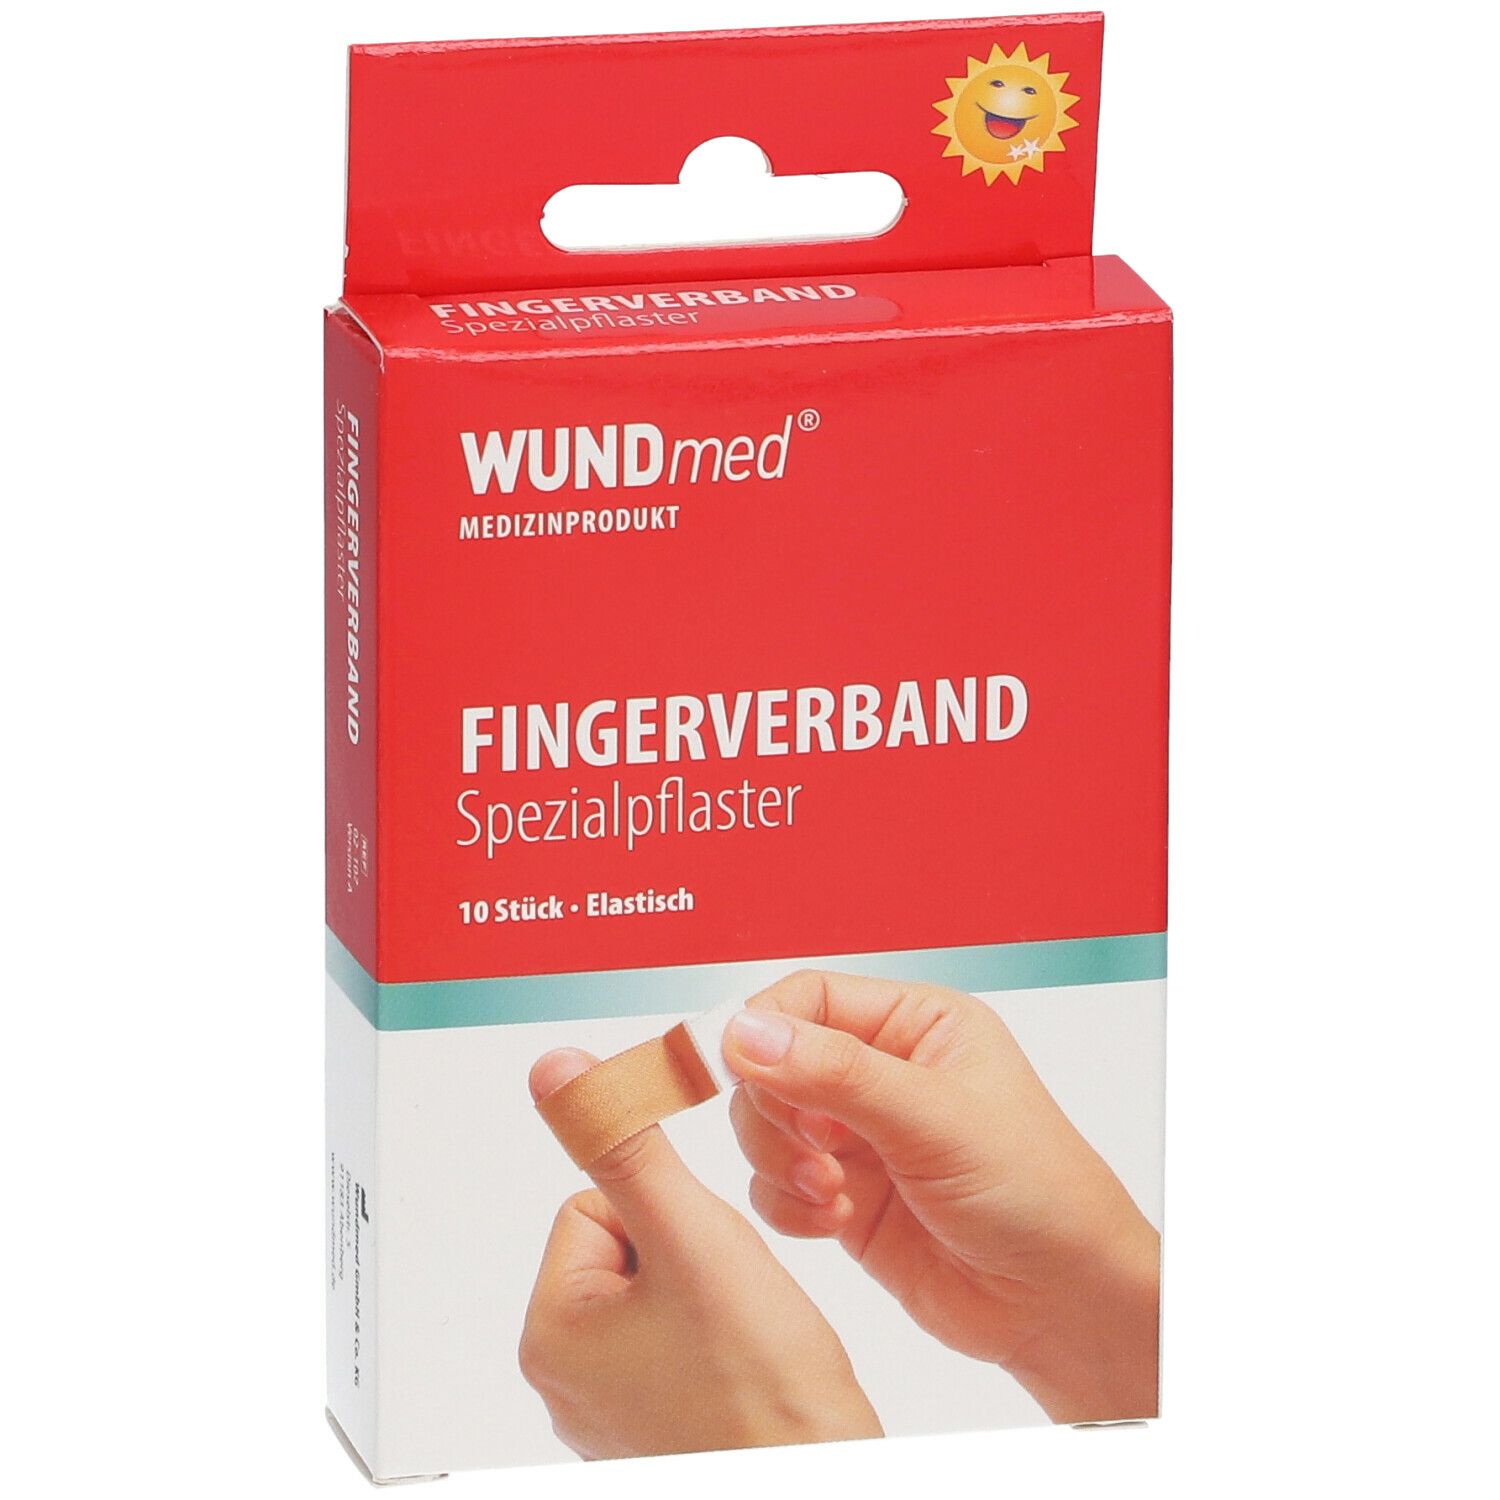 WUNDmed® Spezialpflaster Fingerverband 12 x 2 cm